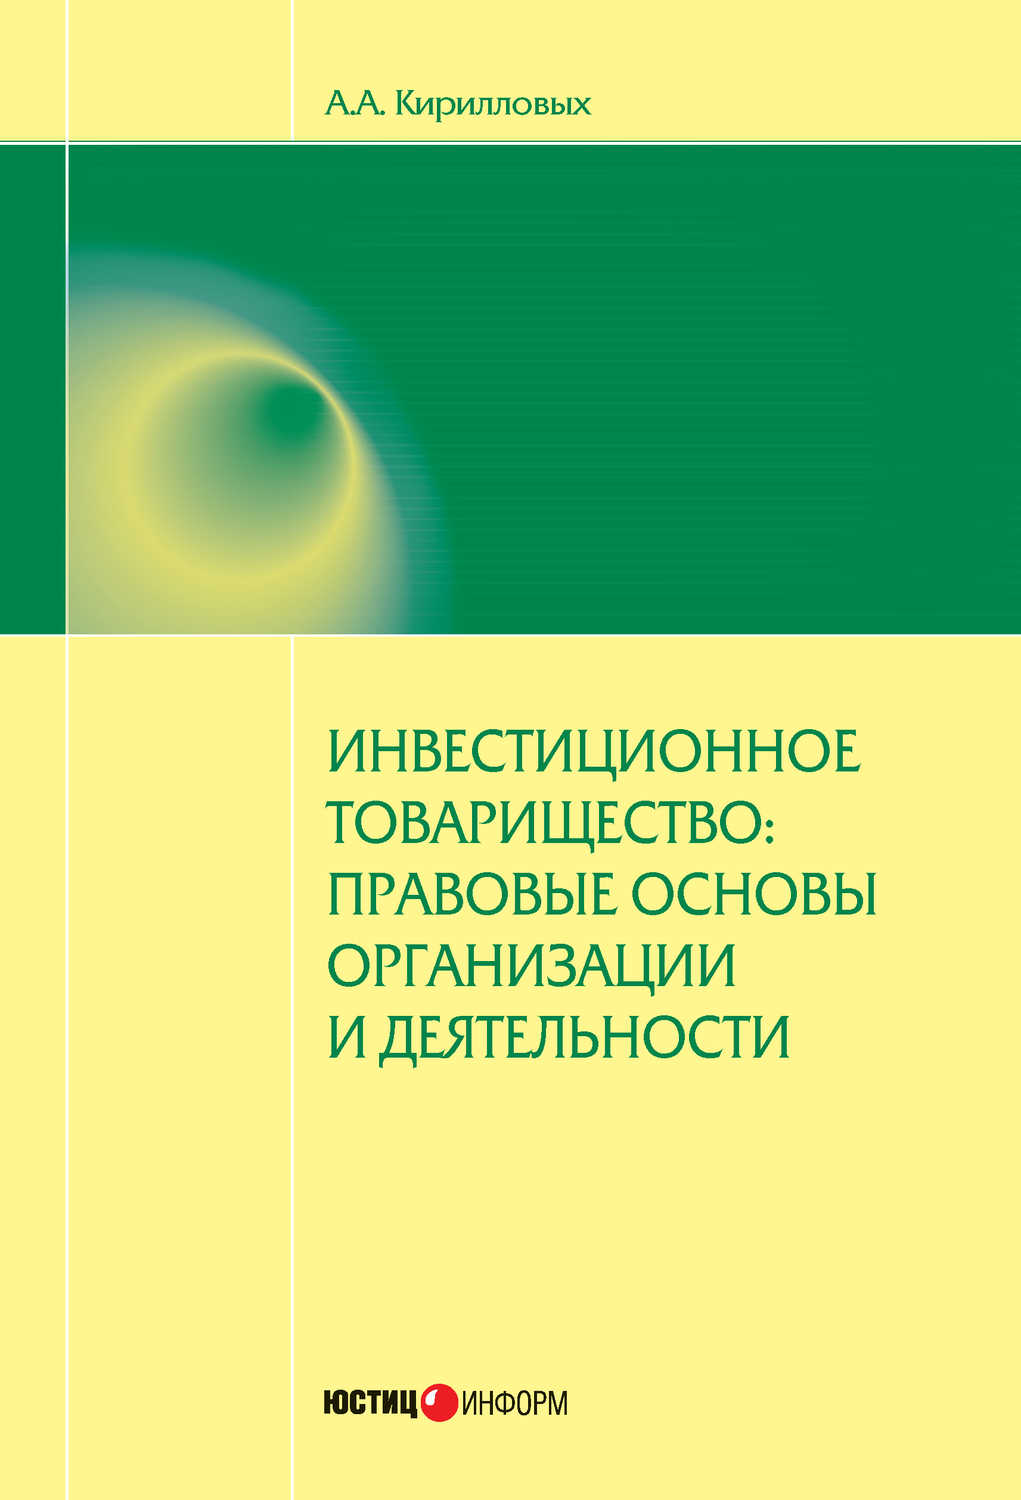 Кирилловых Андрей Александрович - «Инвестиционное товарищество: правовые основы организации и деятельности»